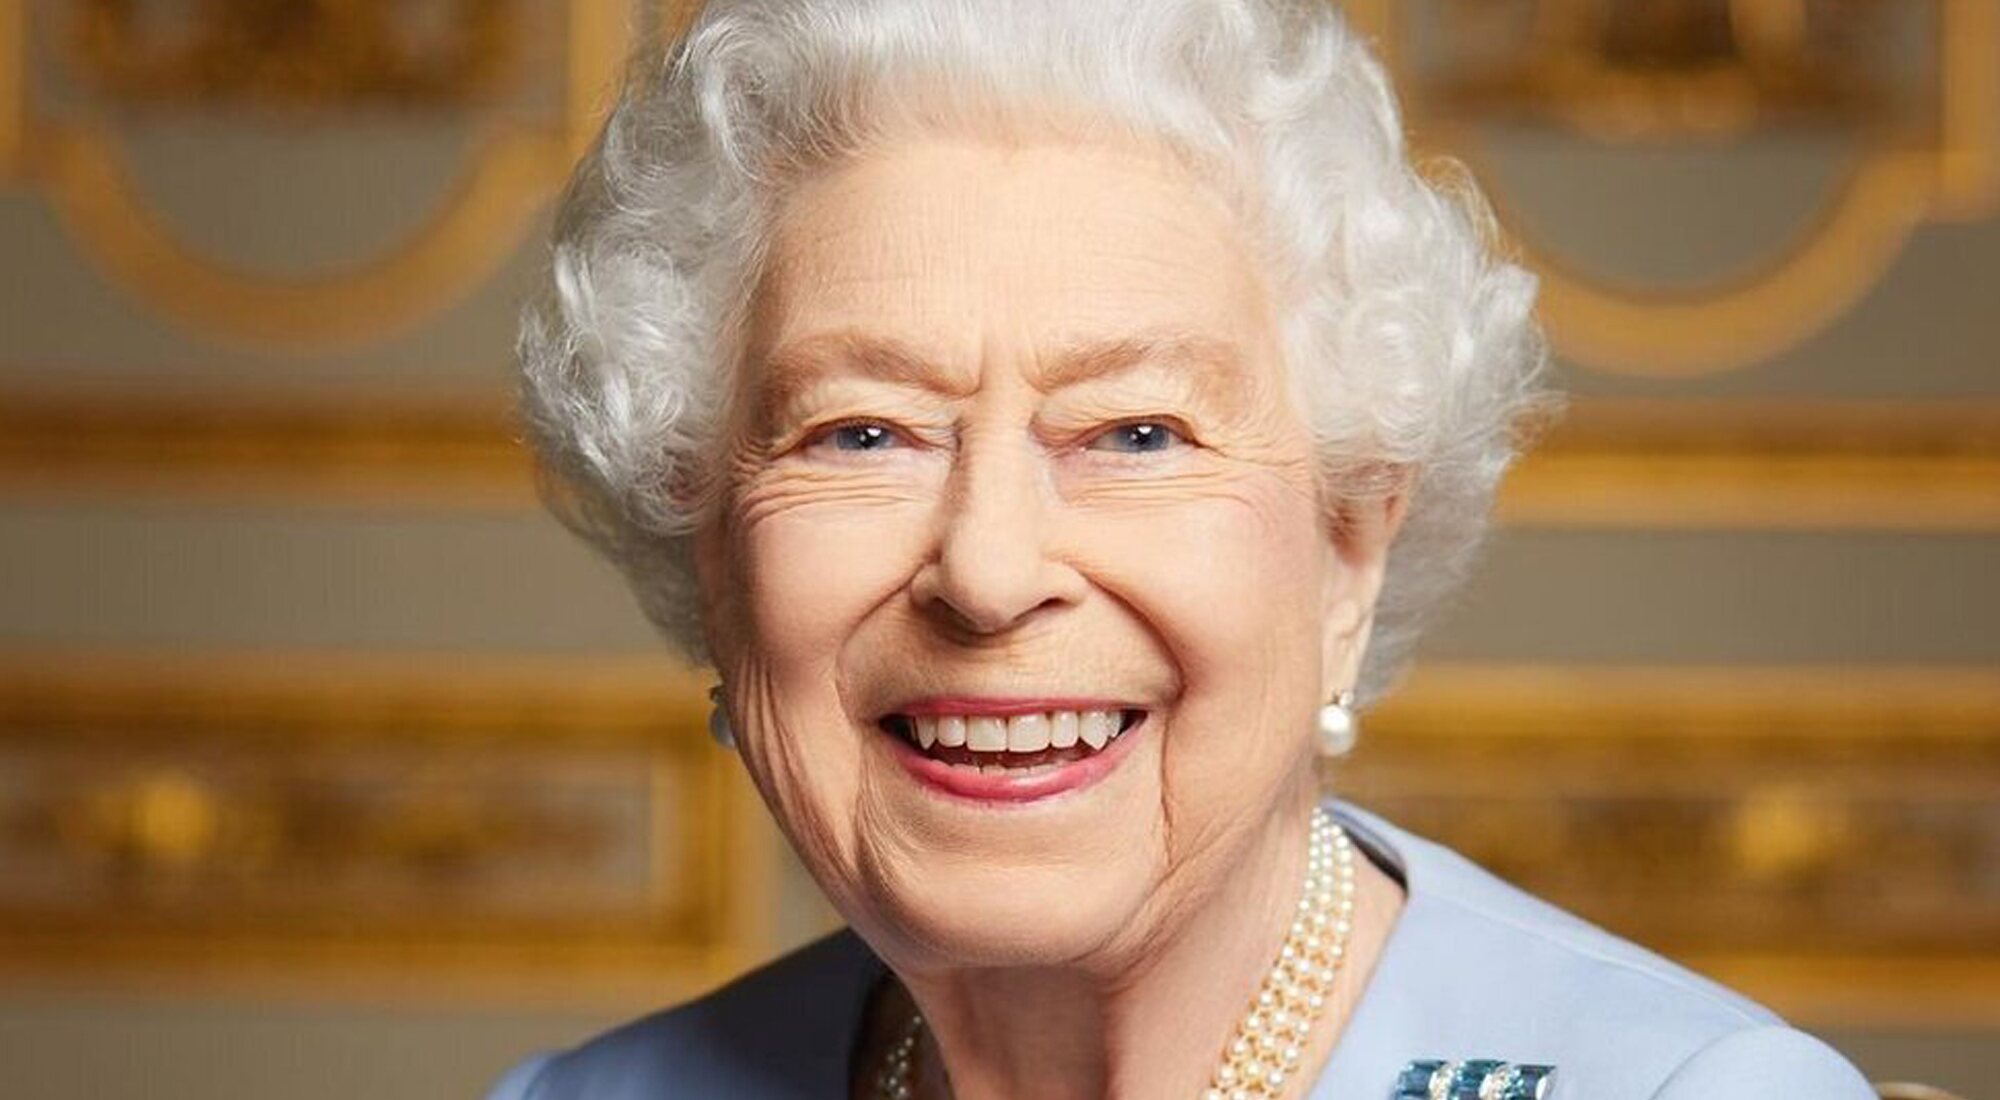 Última imagen oficial de la reina Isabel II antes de su muerte